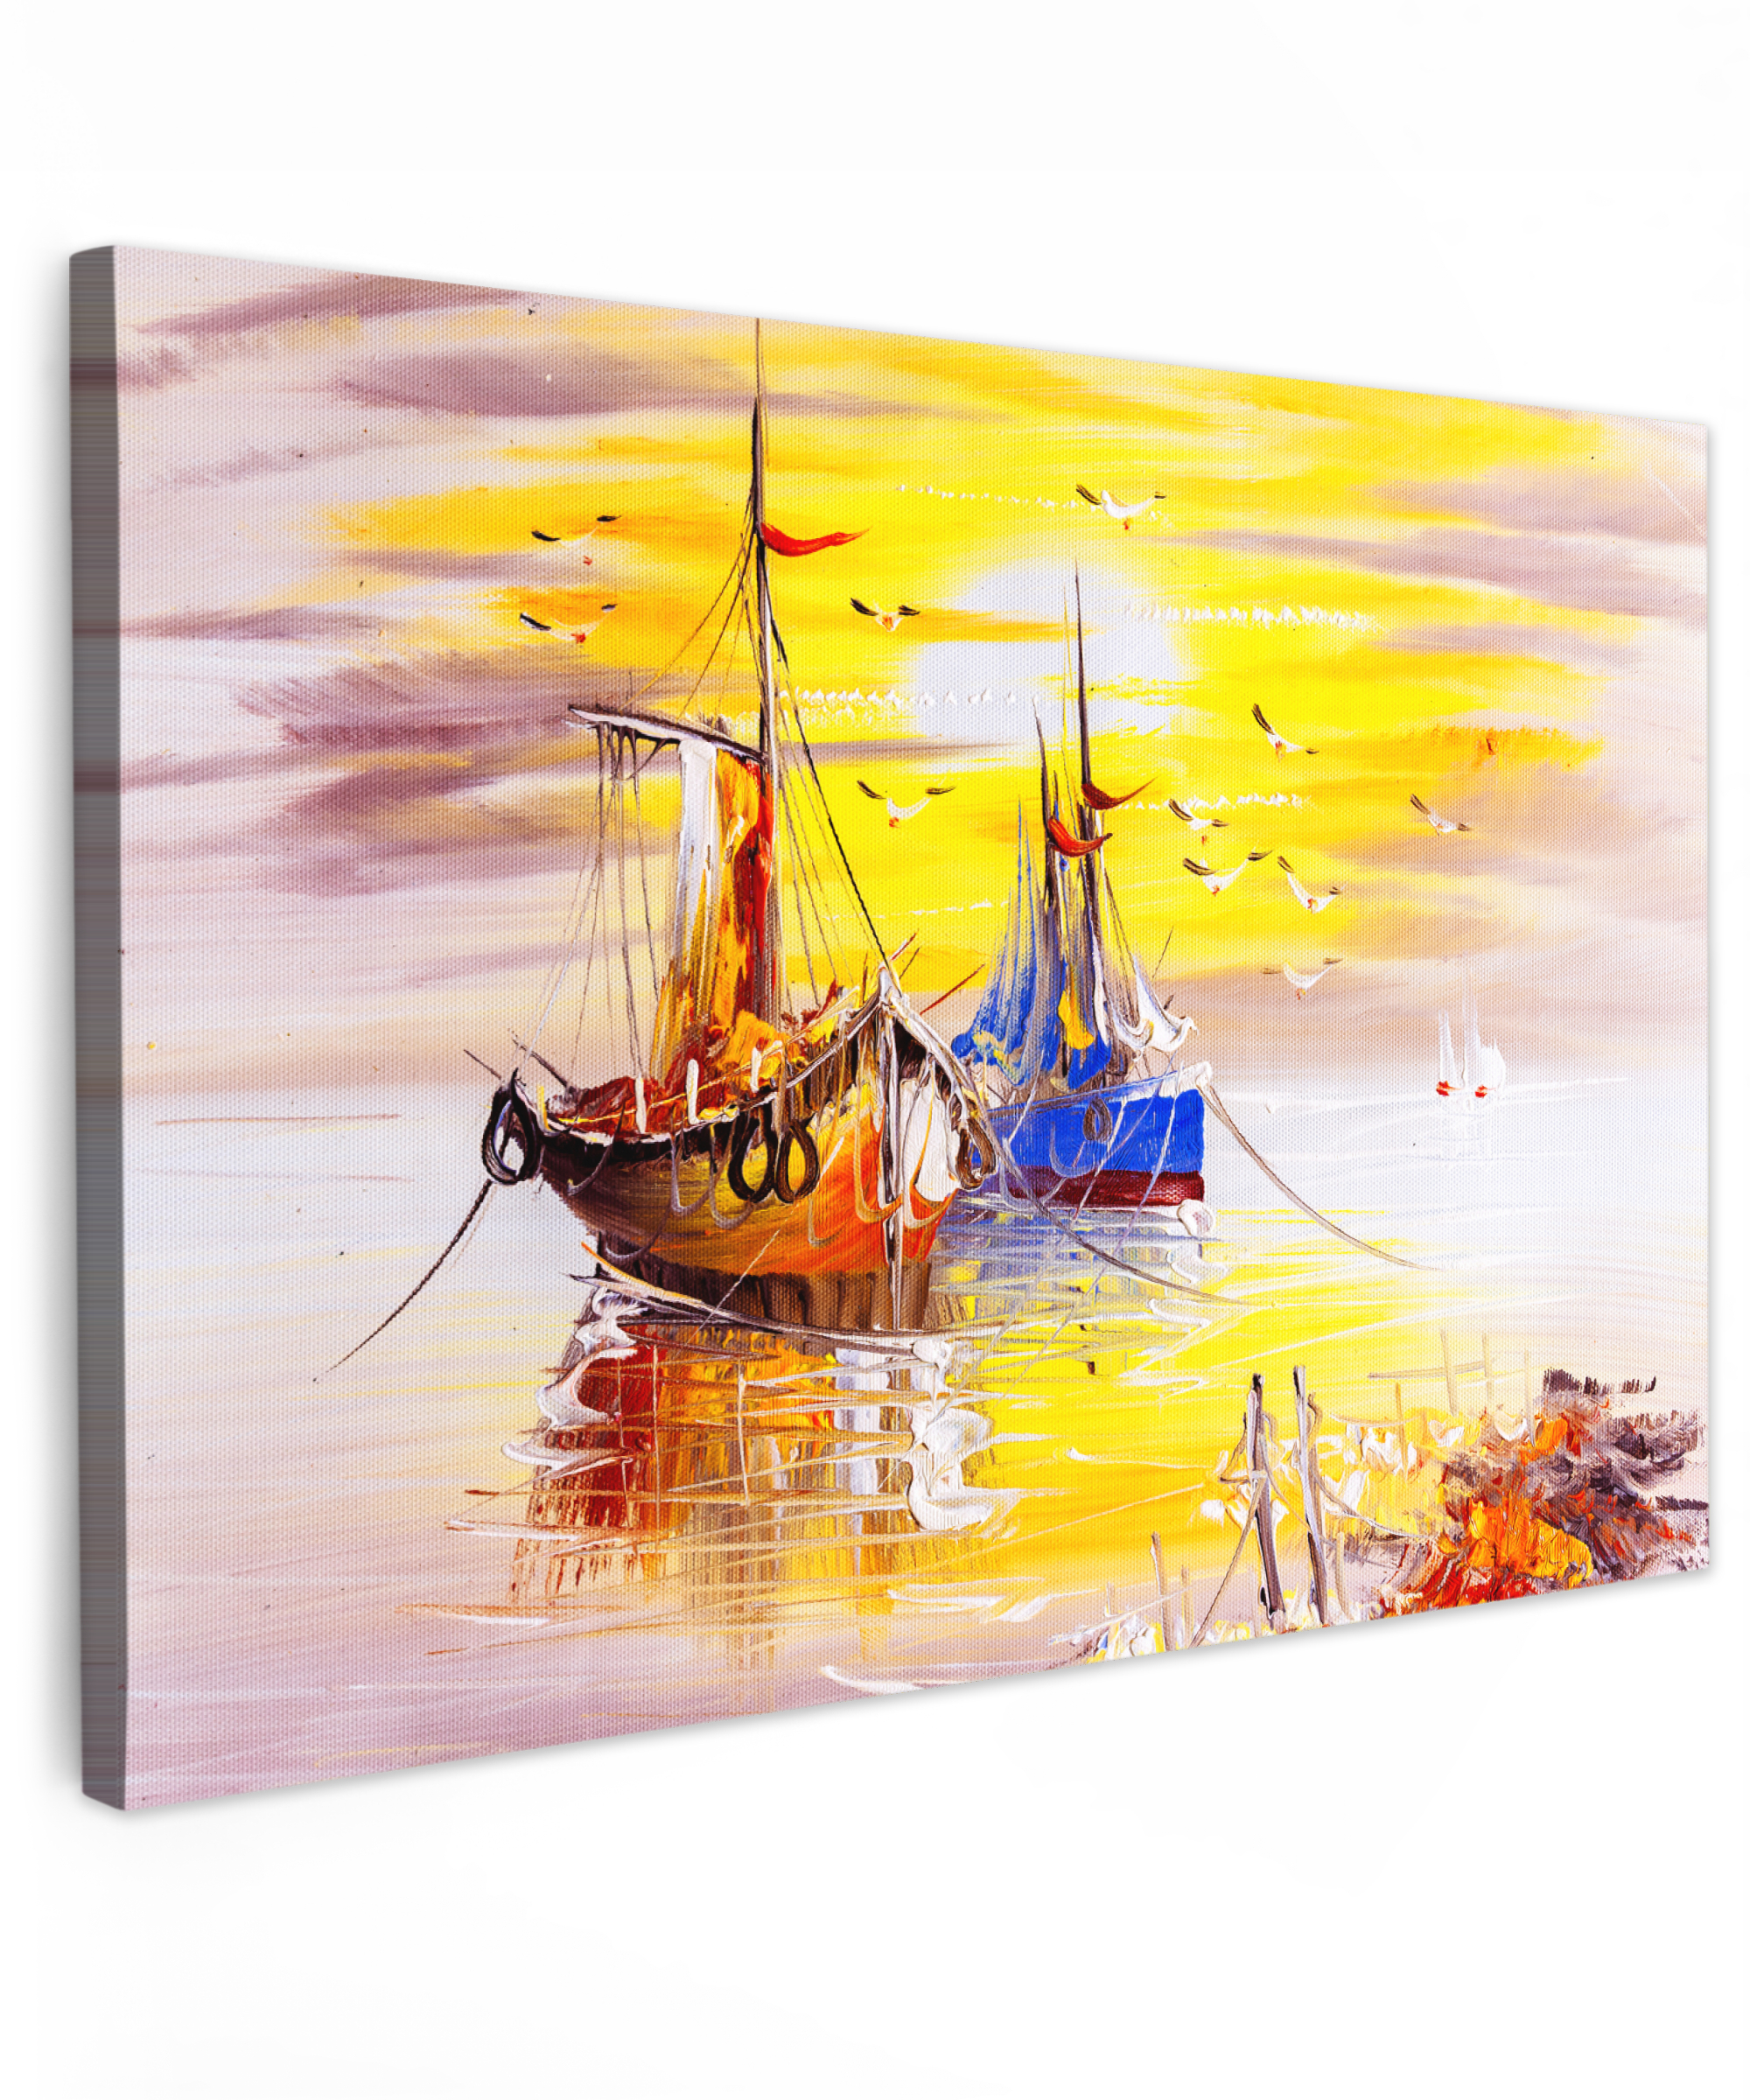 Canvas schilderij - Schilderij - Boot - Water - Olieverf